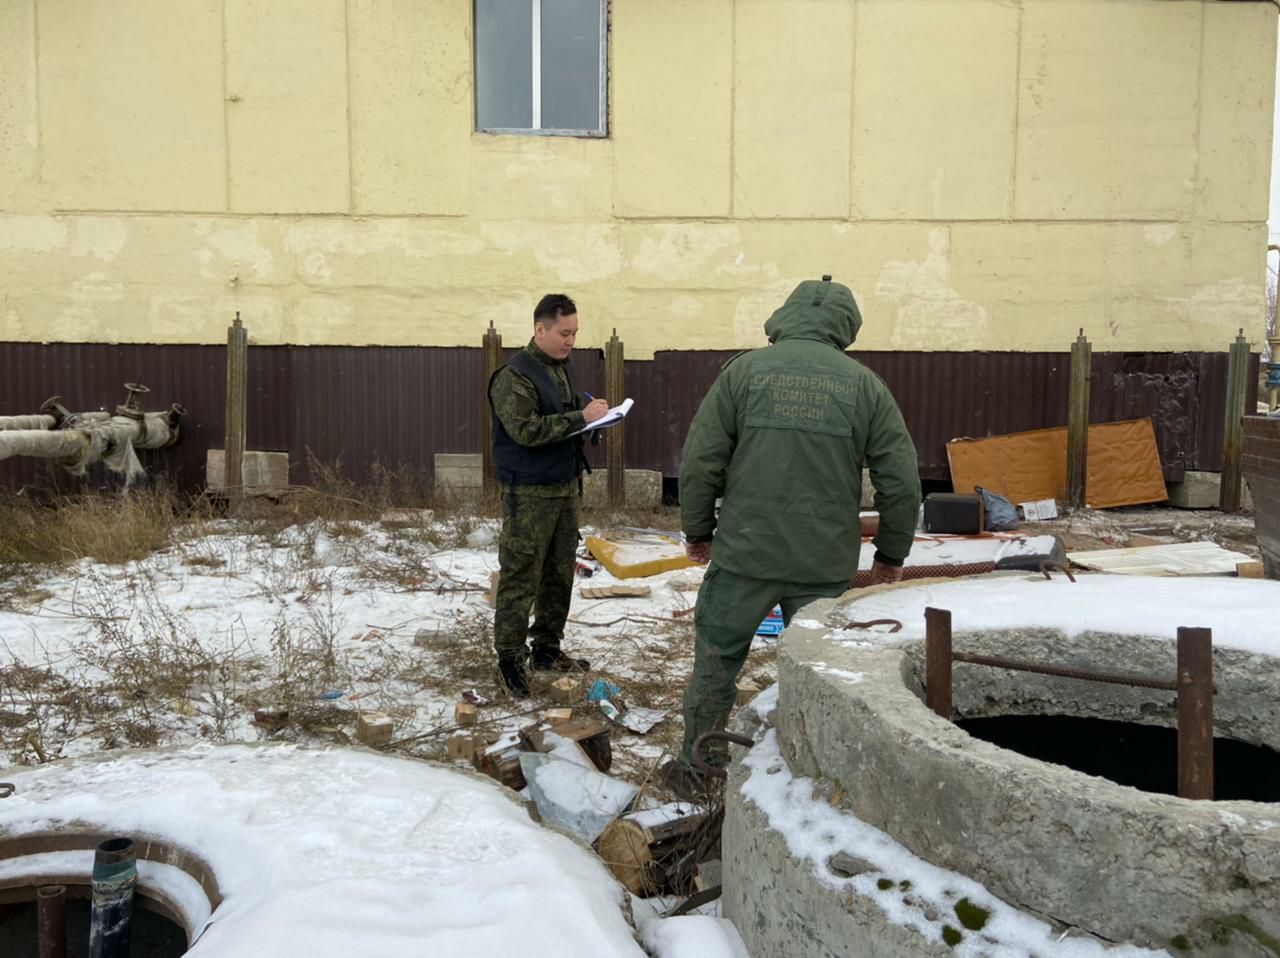 Фрагменты тела обнаружили возле жилого дома в Якутске